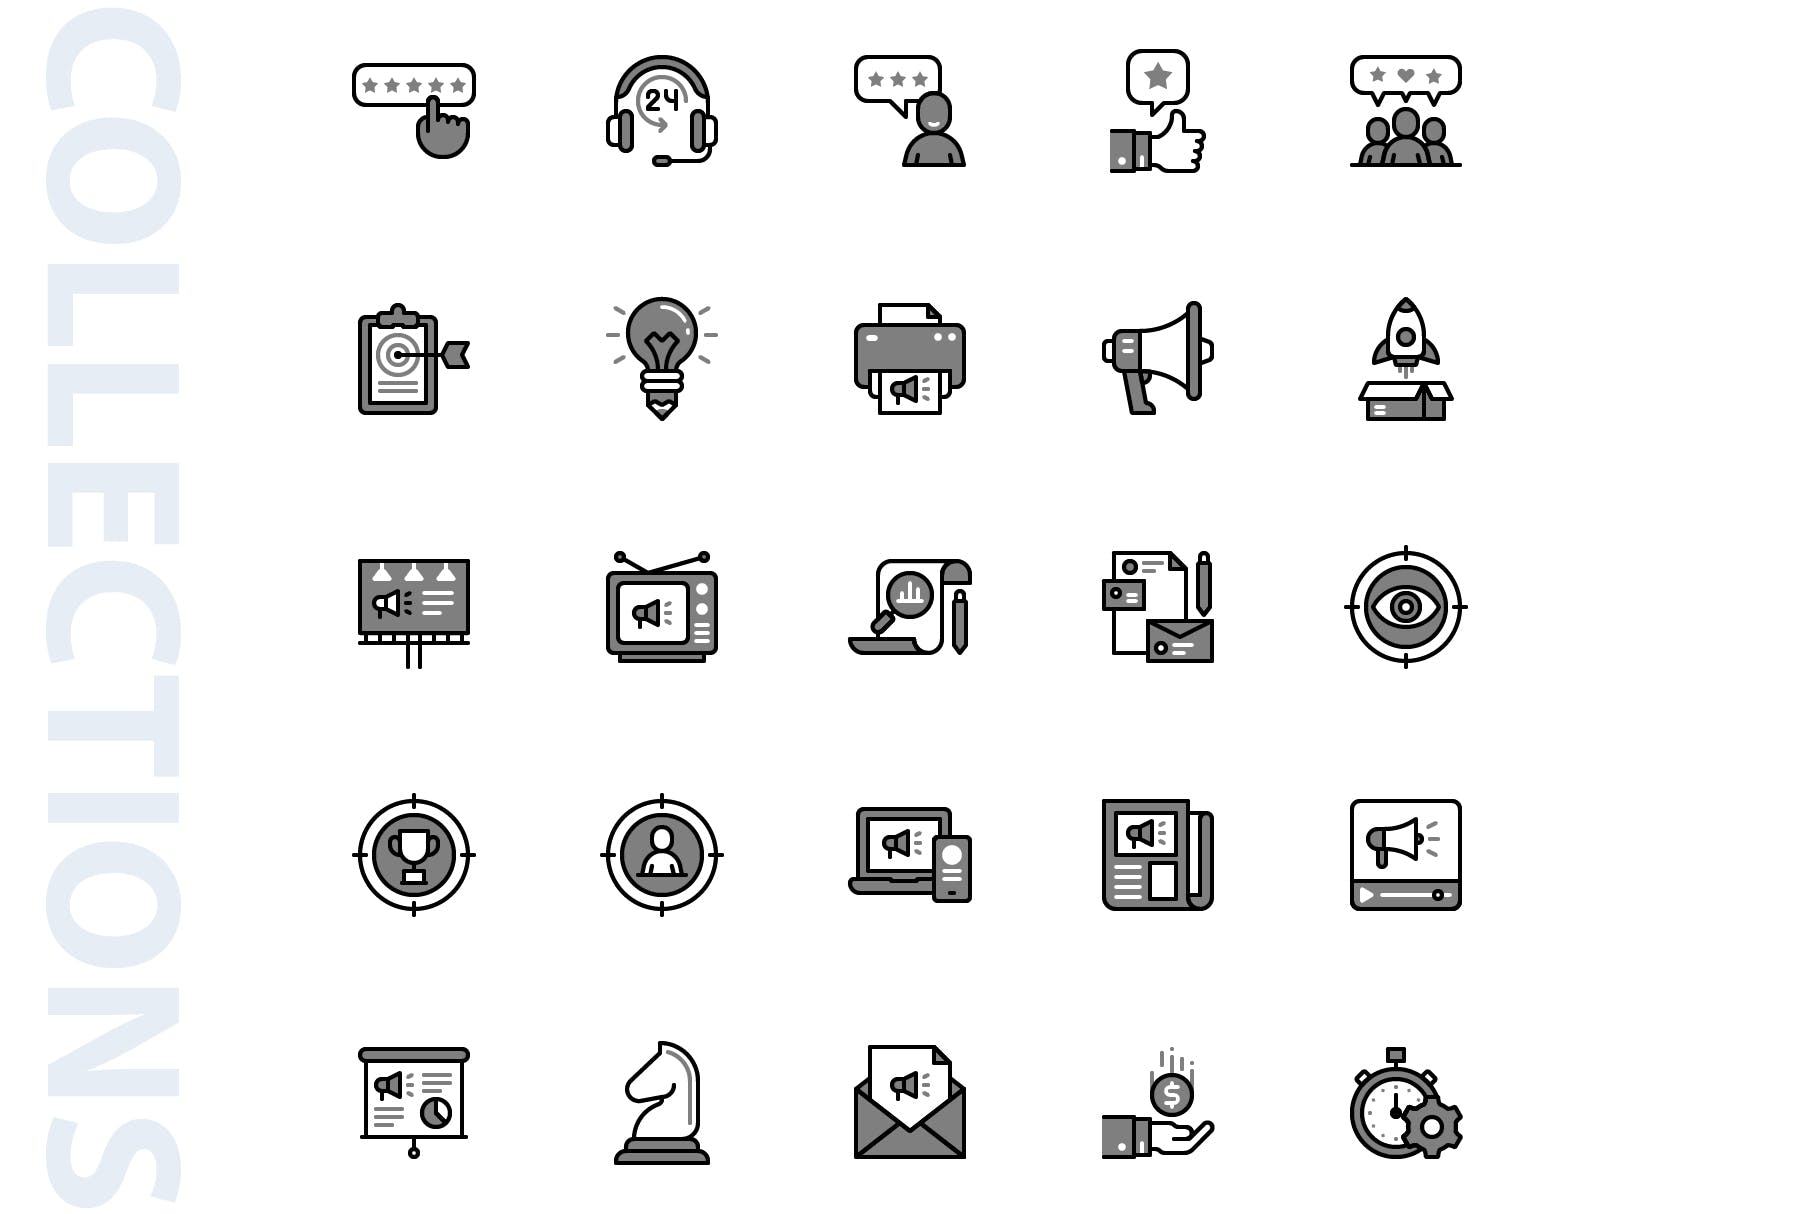 25枚市场营销Chromatic风格矢量素材库精选图标 Marketing Chromatic Icons插图(2)